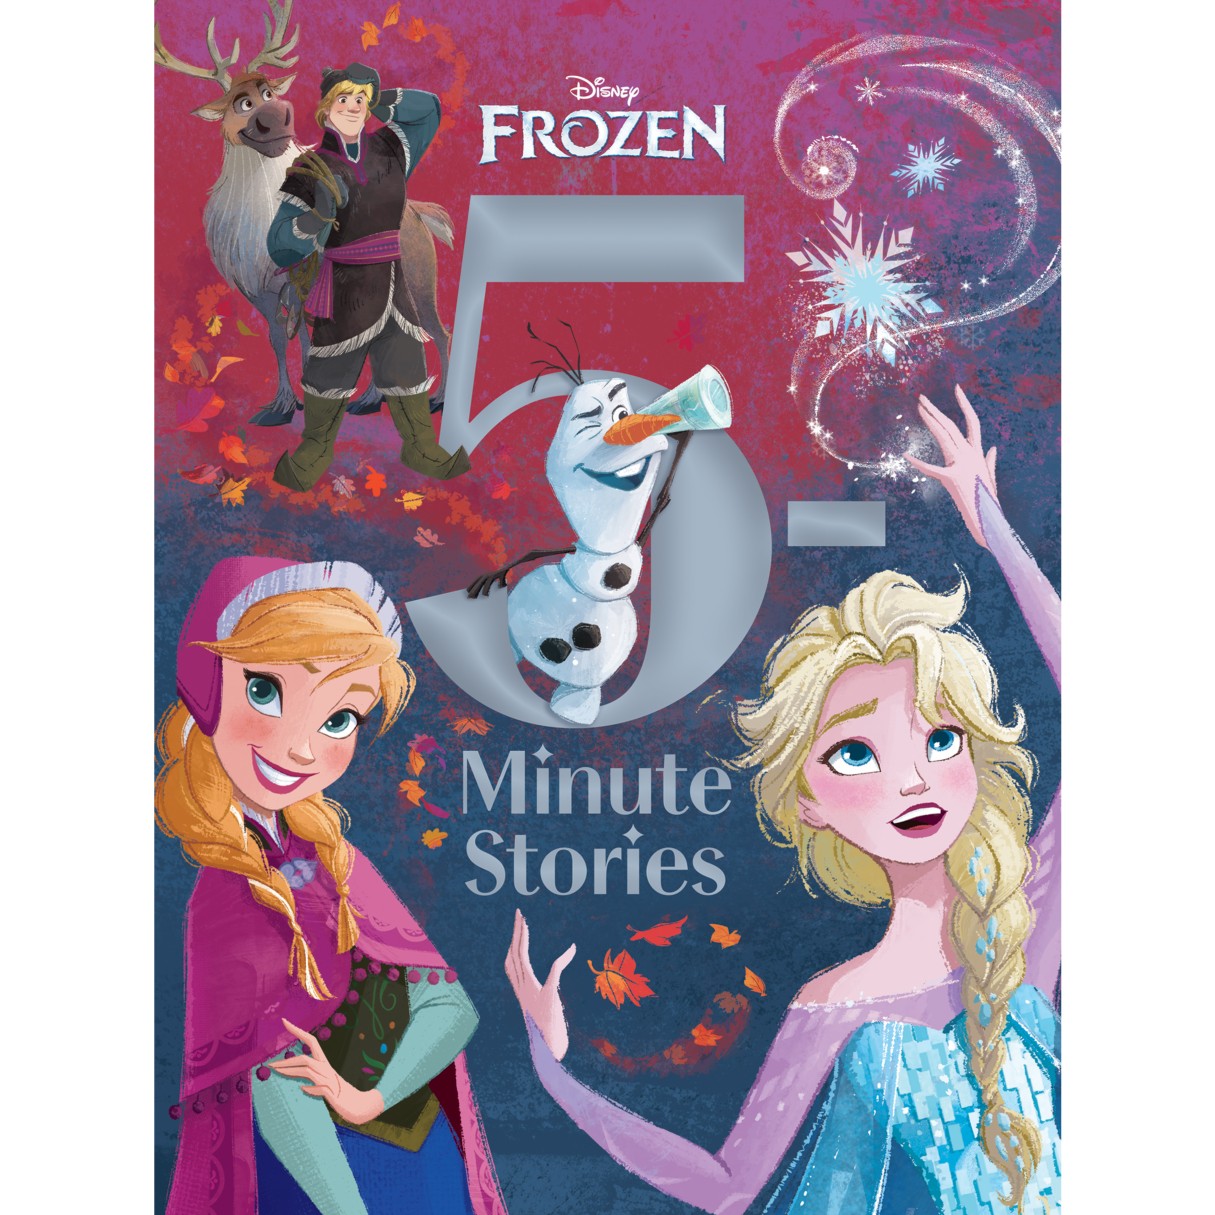 Frozen: 5-Minute Stories